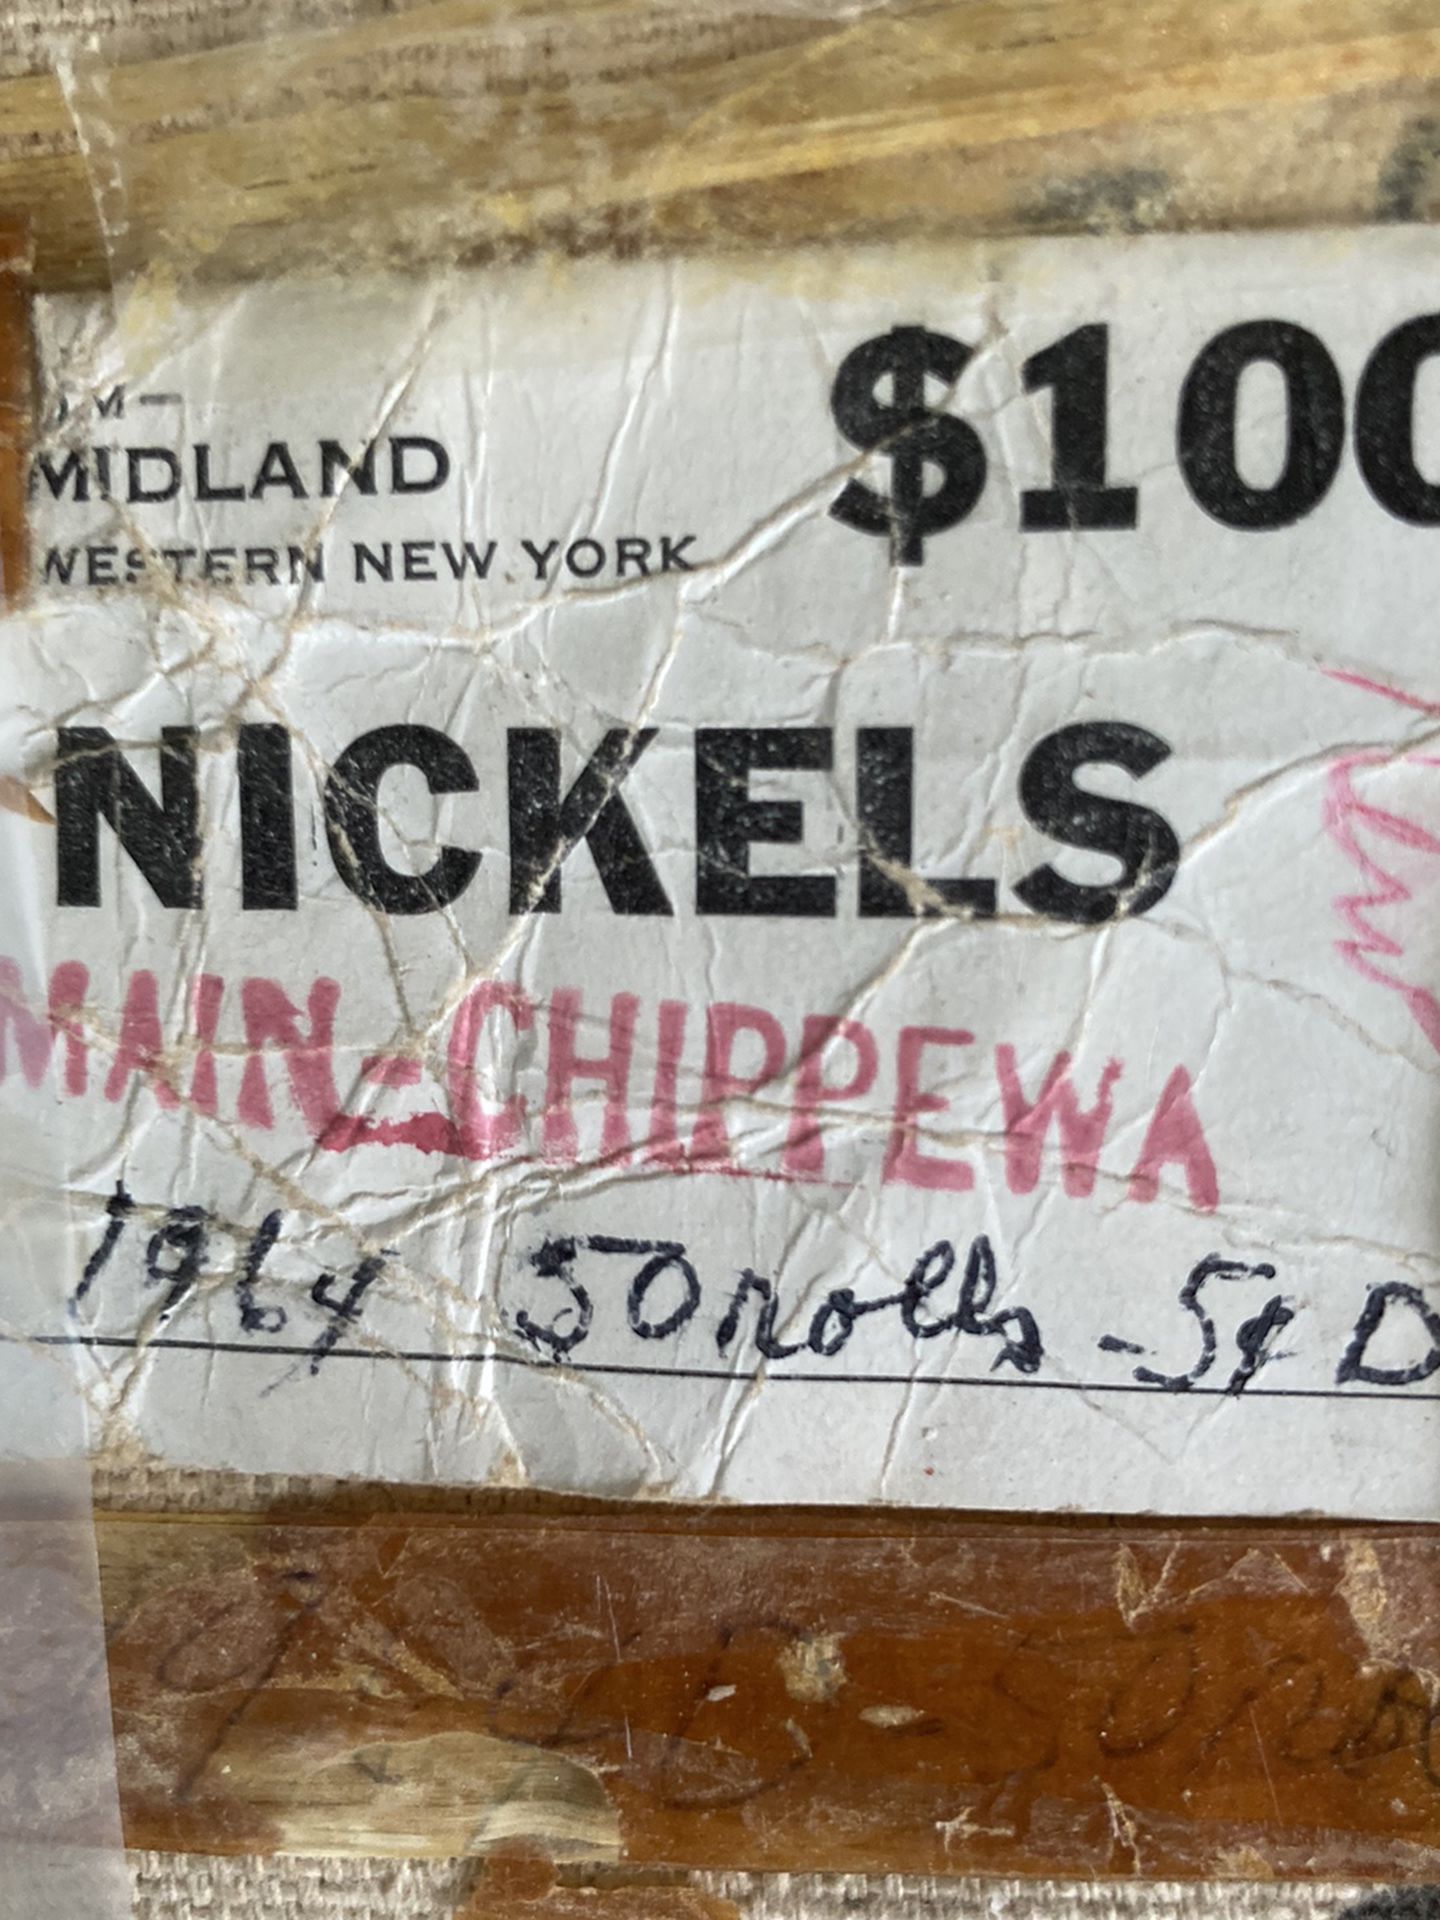 1965 Pennies Purchased Main and Chippewa Bank, Buffalo, NY